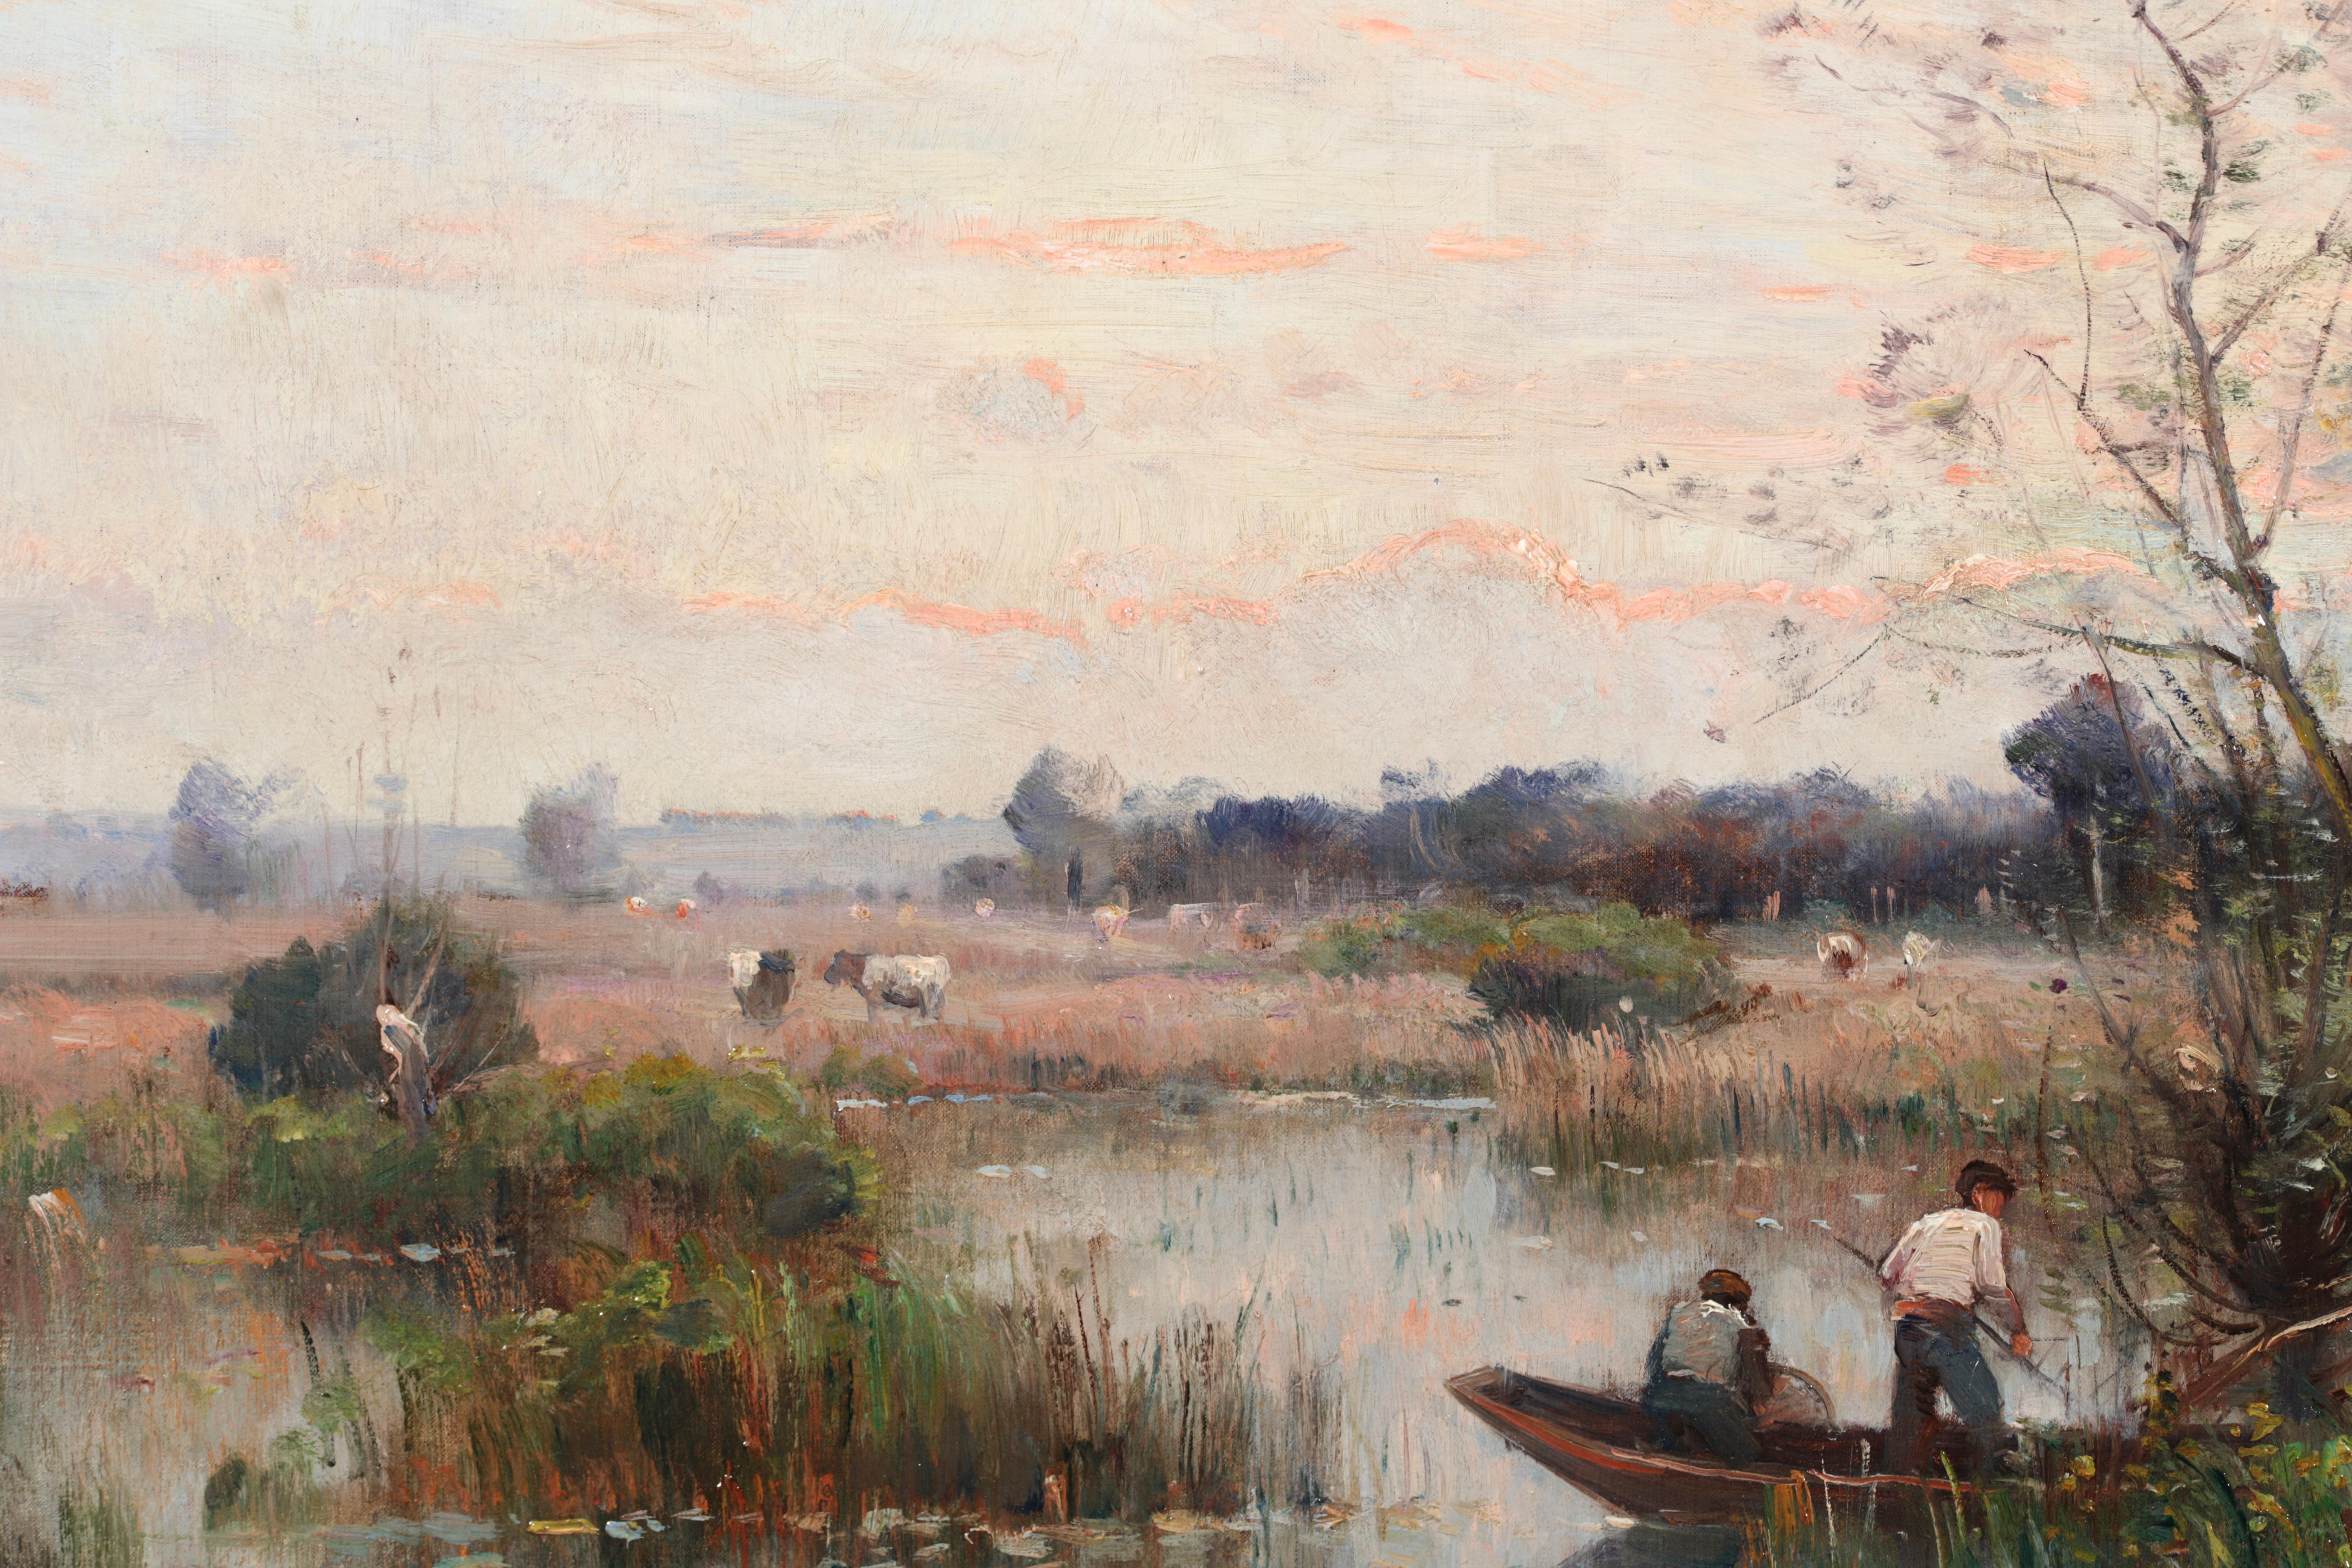 Fishing on a River - Impressionistisches Ölgemälde, Boot auf Fluss Landschaft von Louis Japy 2